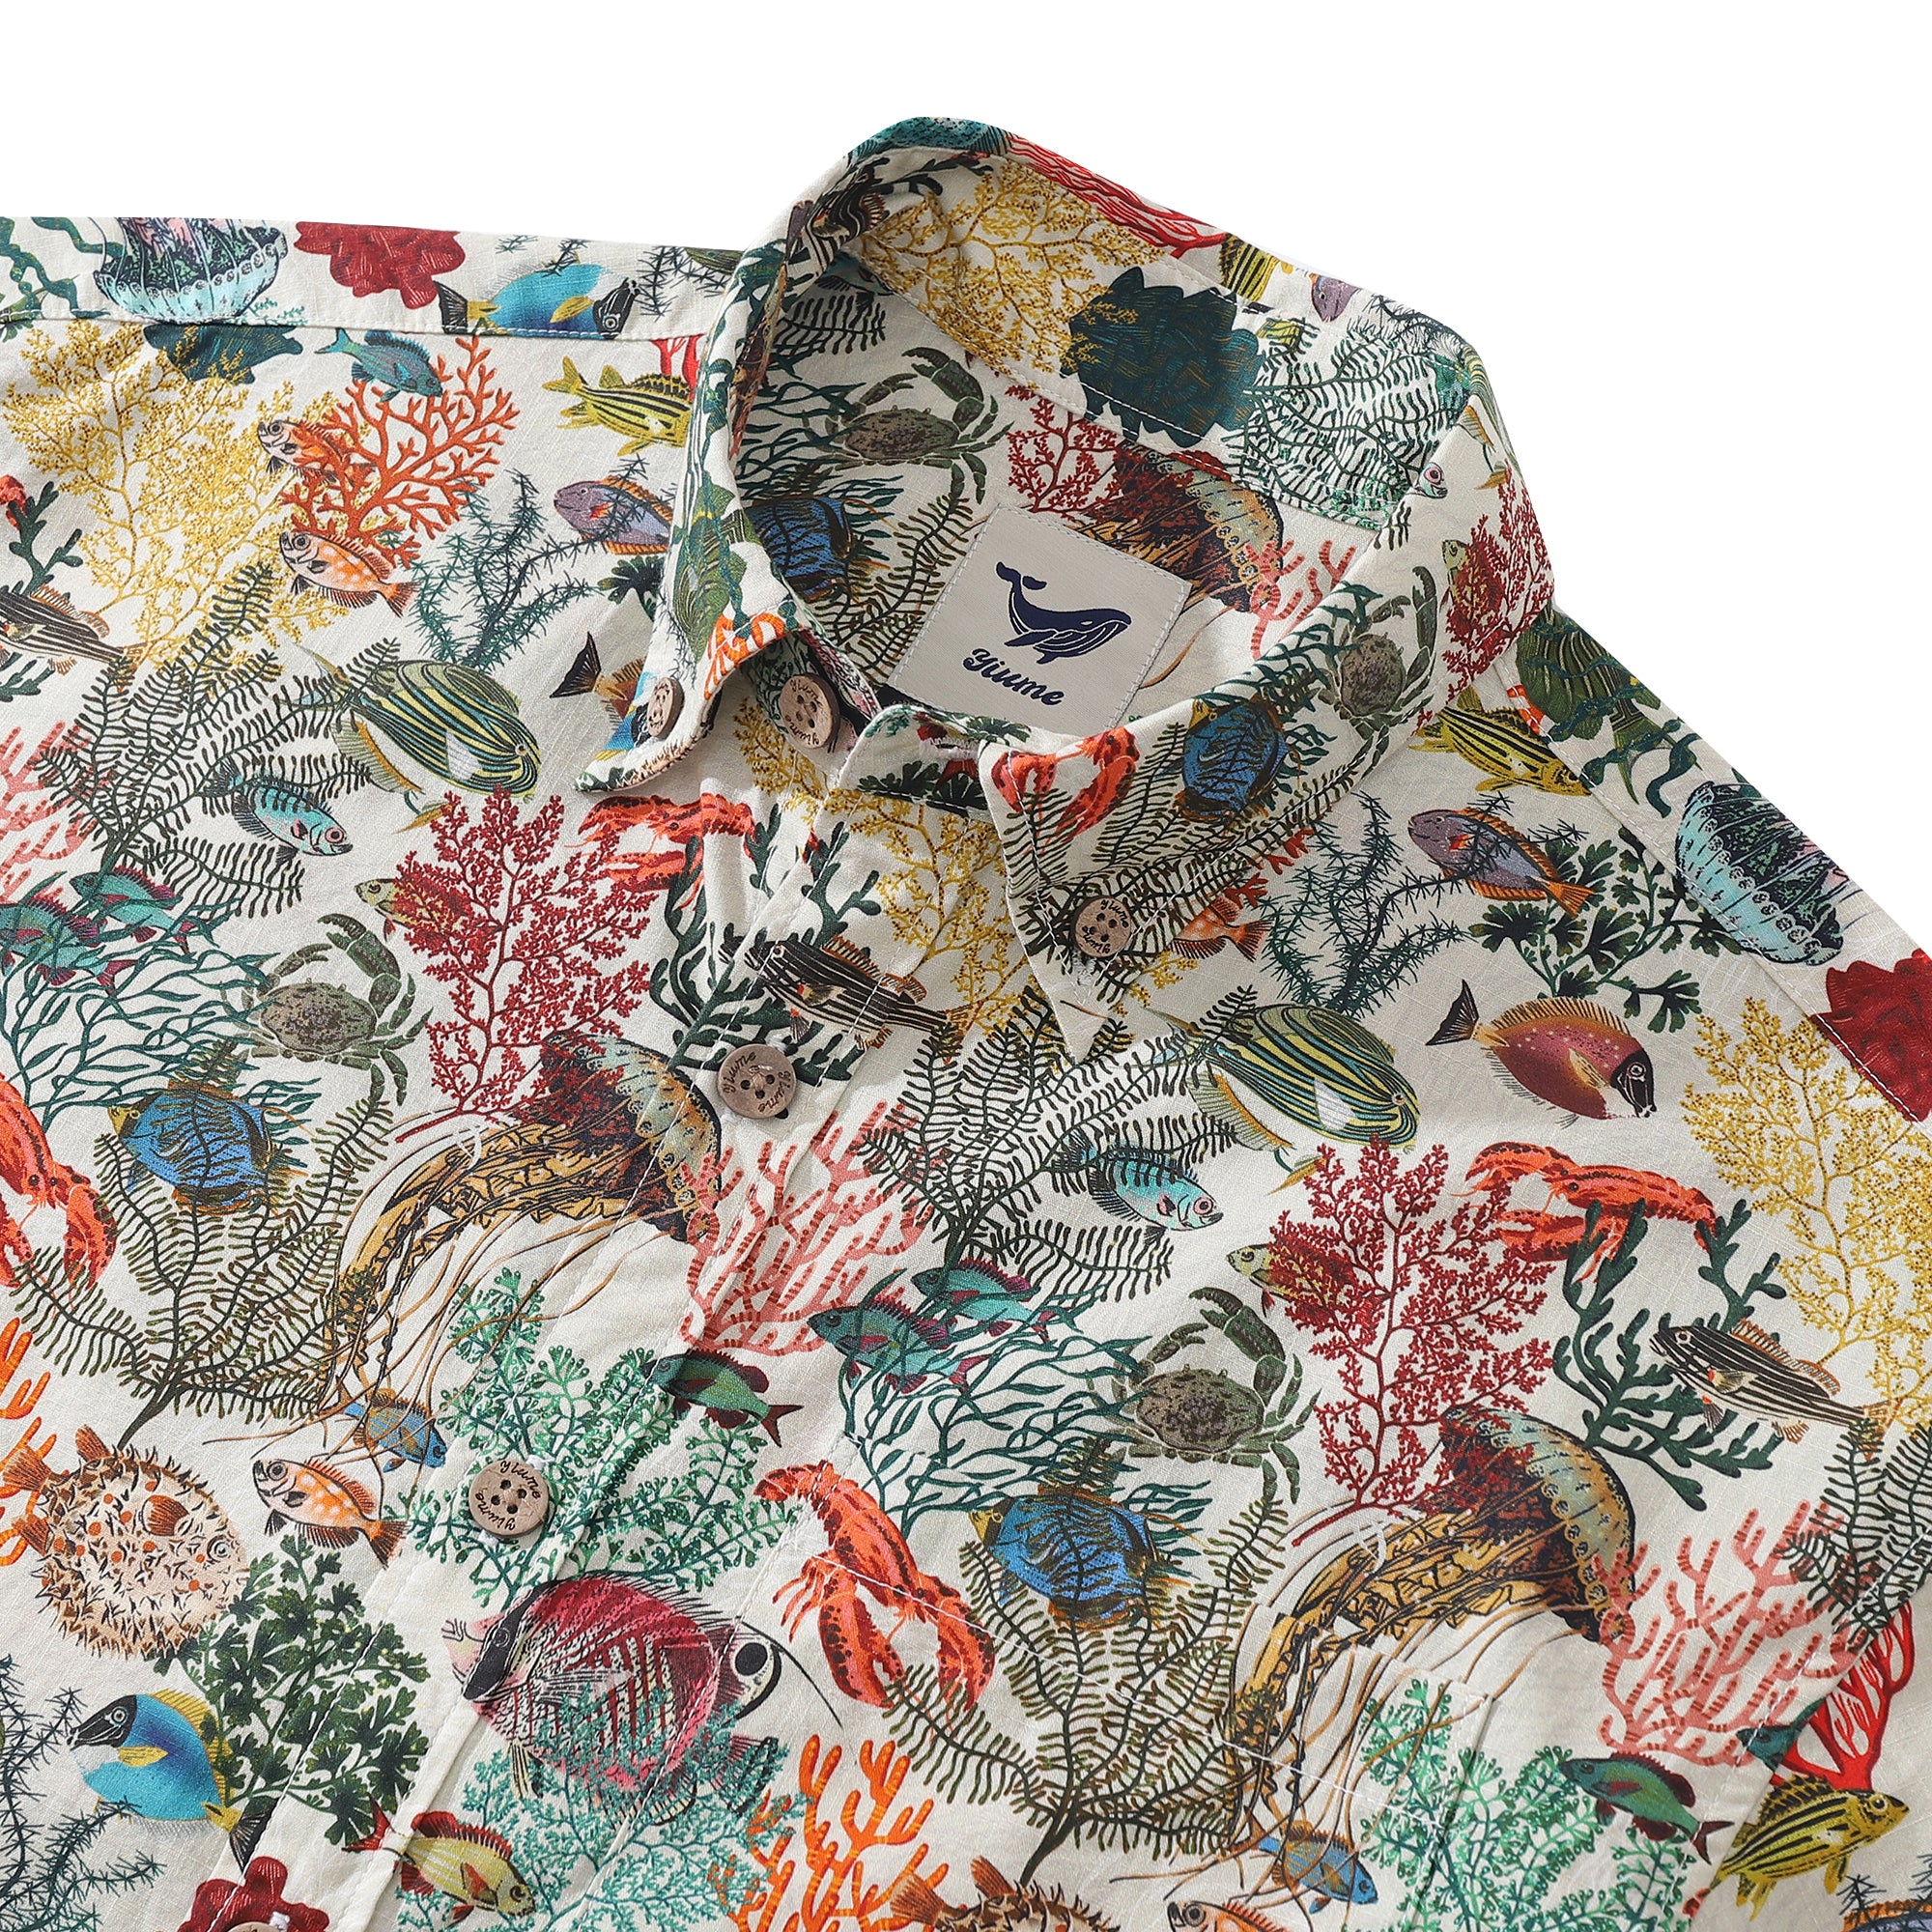 Chemise hawaïenne pour hommes Island Paradise par Annick Schmidt-Reichardt chemise Aloha boutonnée en coton à manches courtes